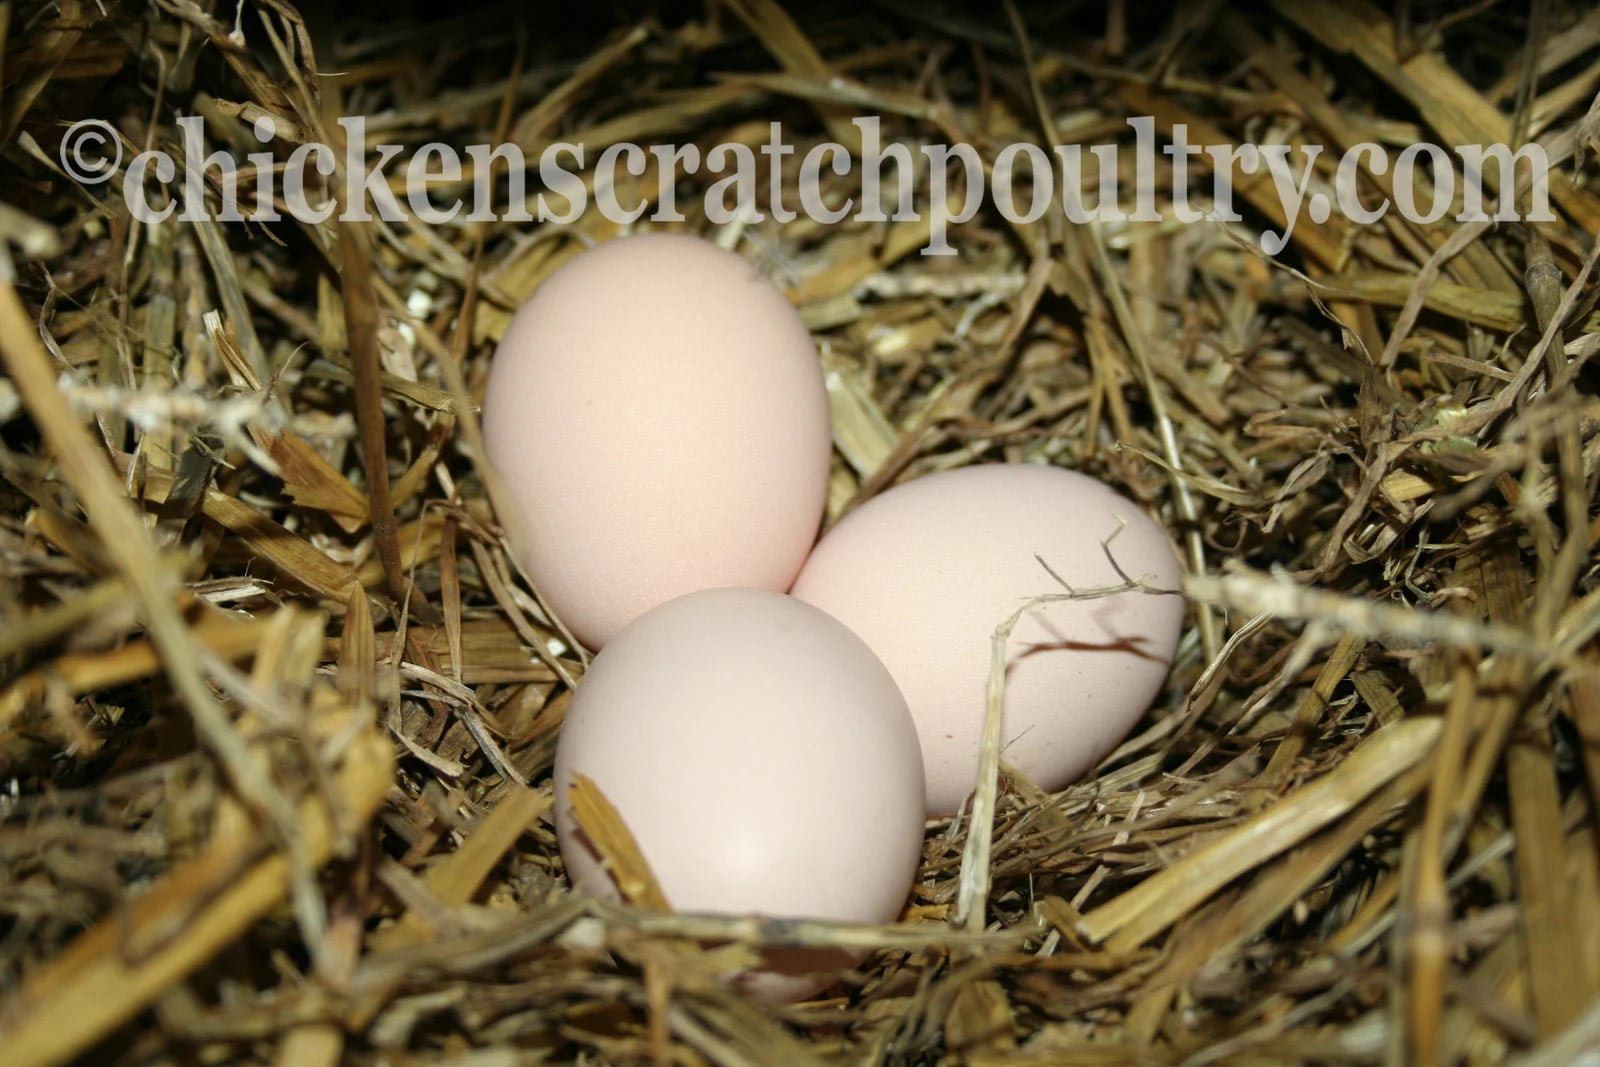 Jubilee Orpington Fertile Hatching Eggs